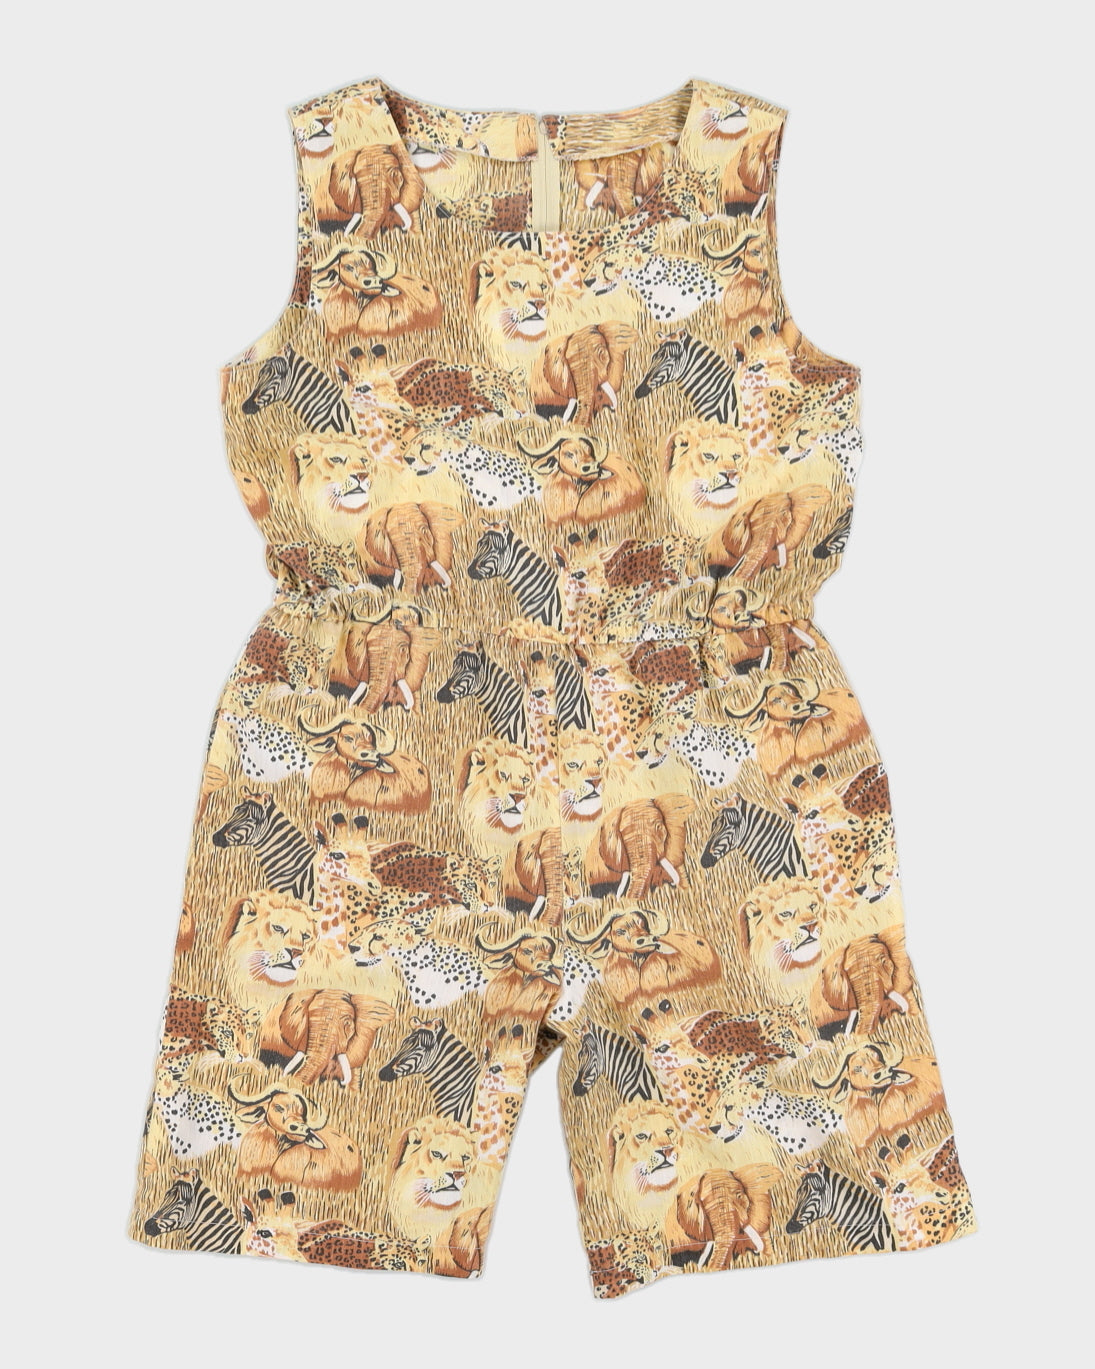 Handmade Animal Print Jumpsuit - M